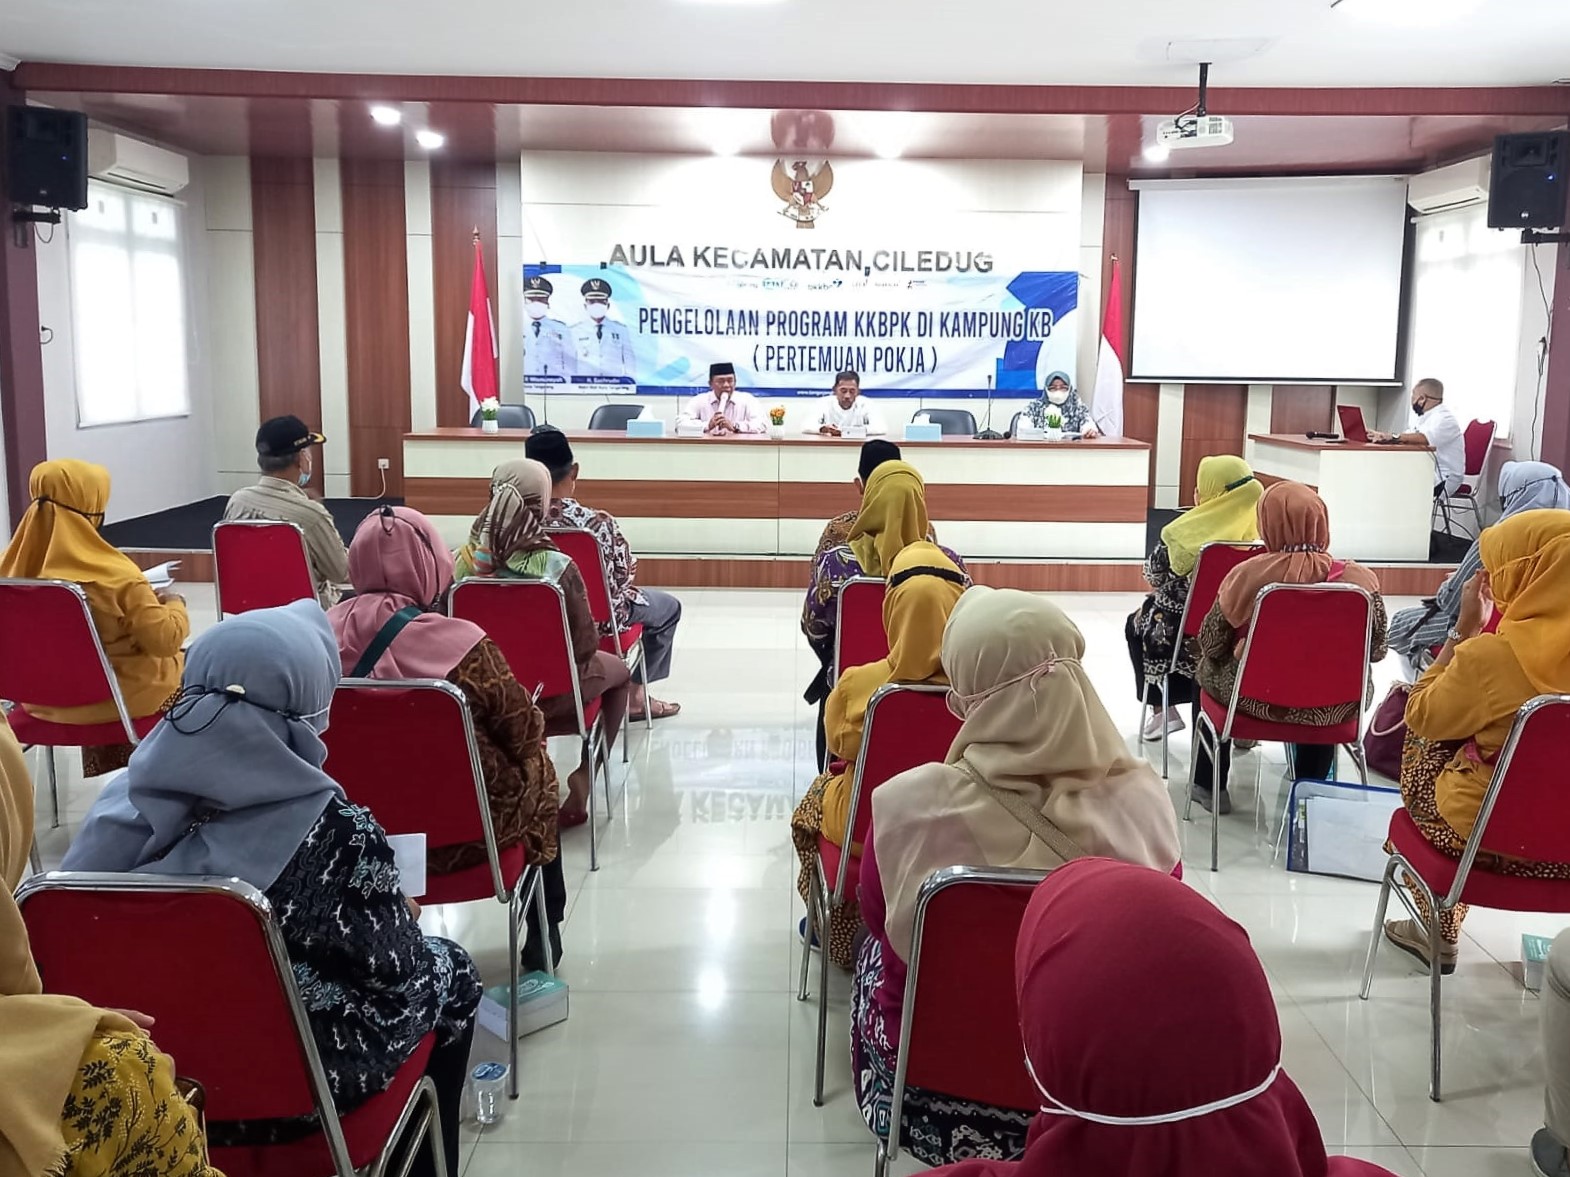 Kegiatan Sosialisasi Pengelolaan Program KKBPK Di Kampung KB oleh DP3AP2KB Kota Tangerang